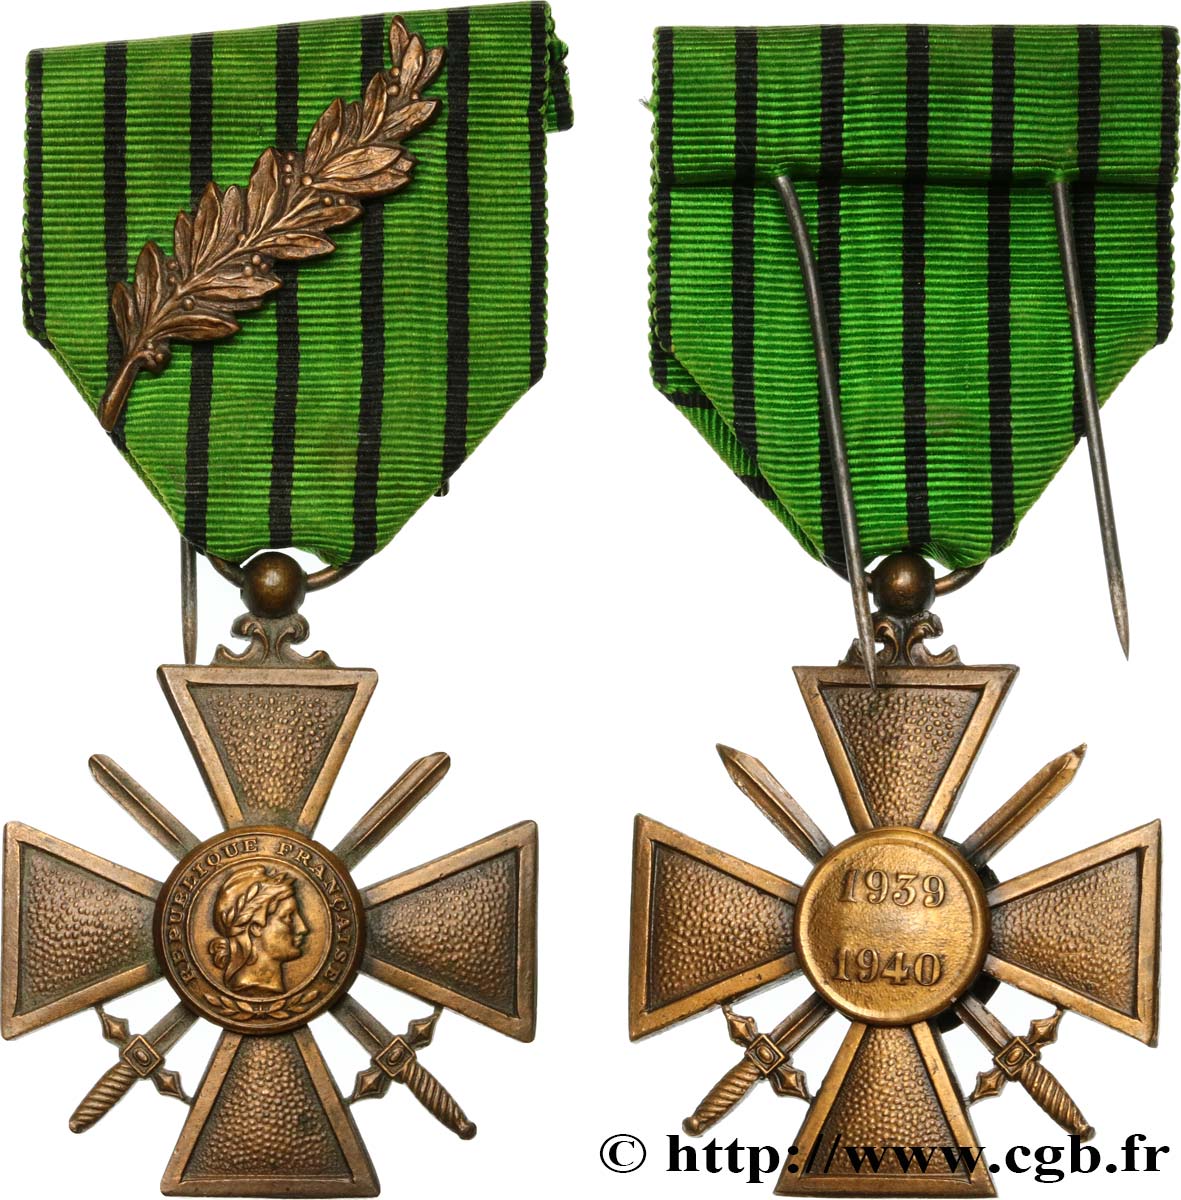 FRENCH STATE Croix de guerre de l’État français AU